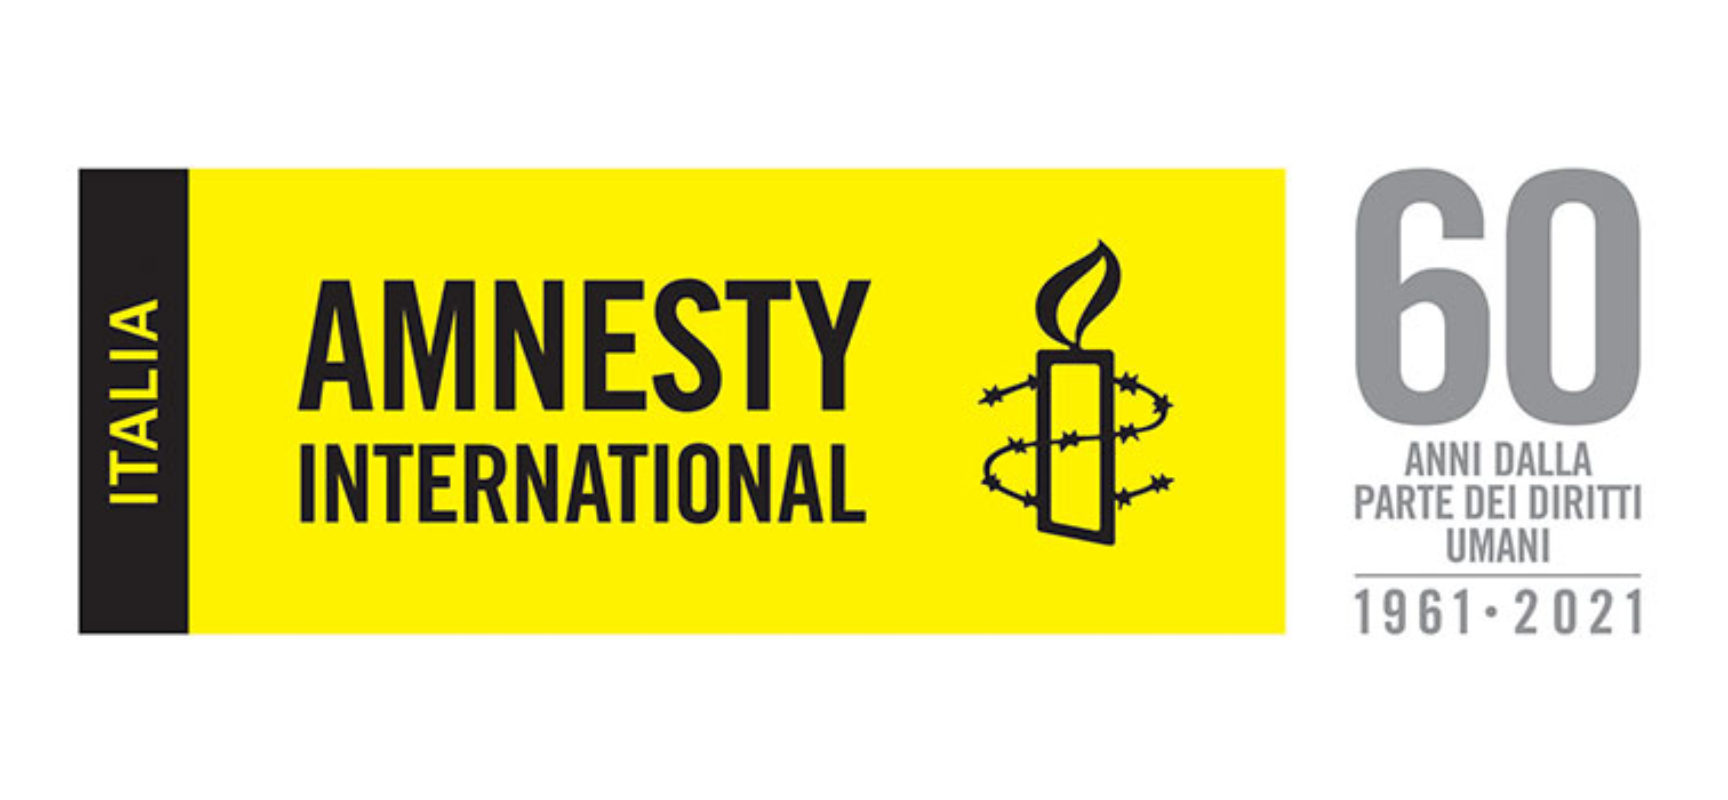 Amnesty International compie 60 anni, il Gruppo Giovani Bisceglie festeggia